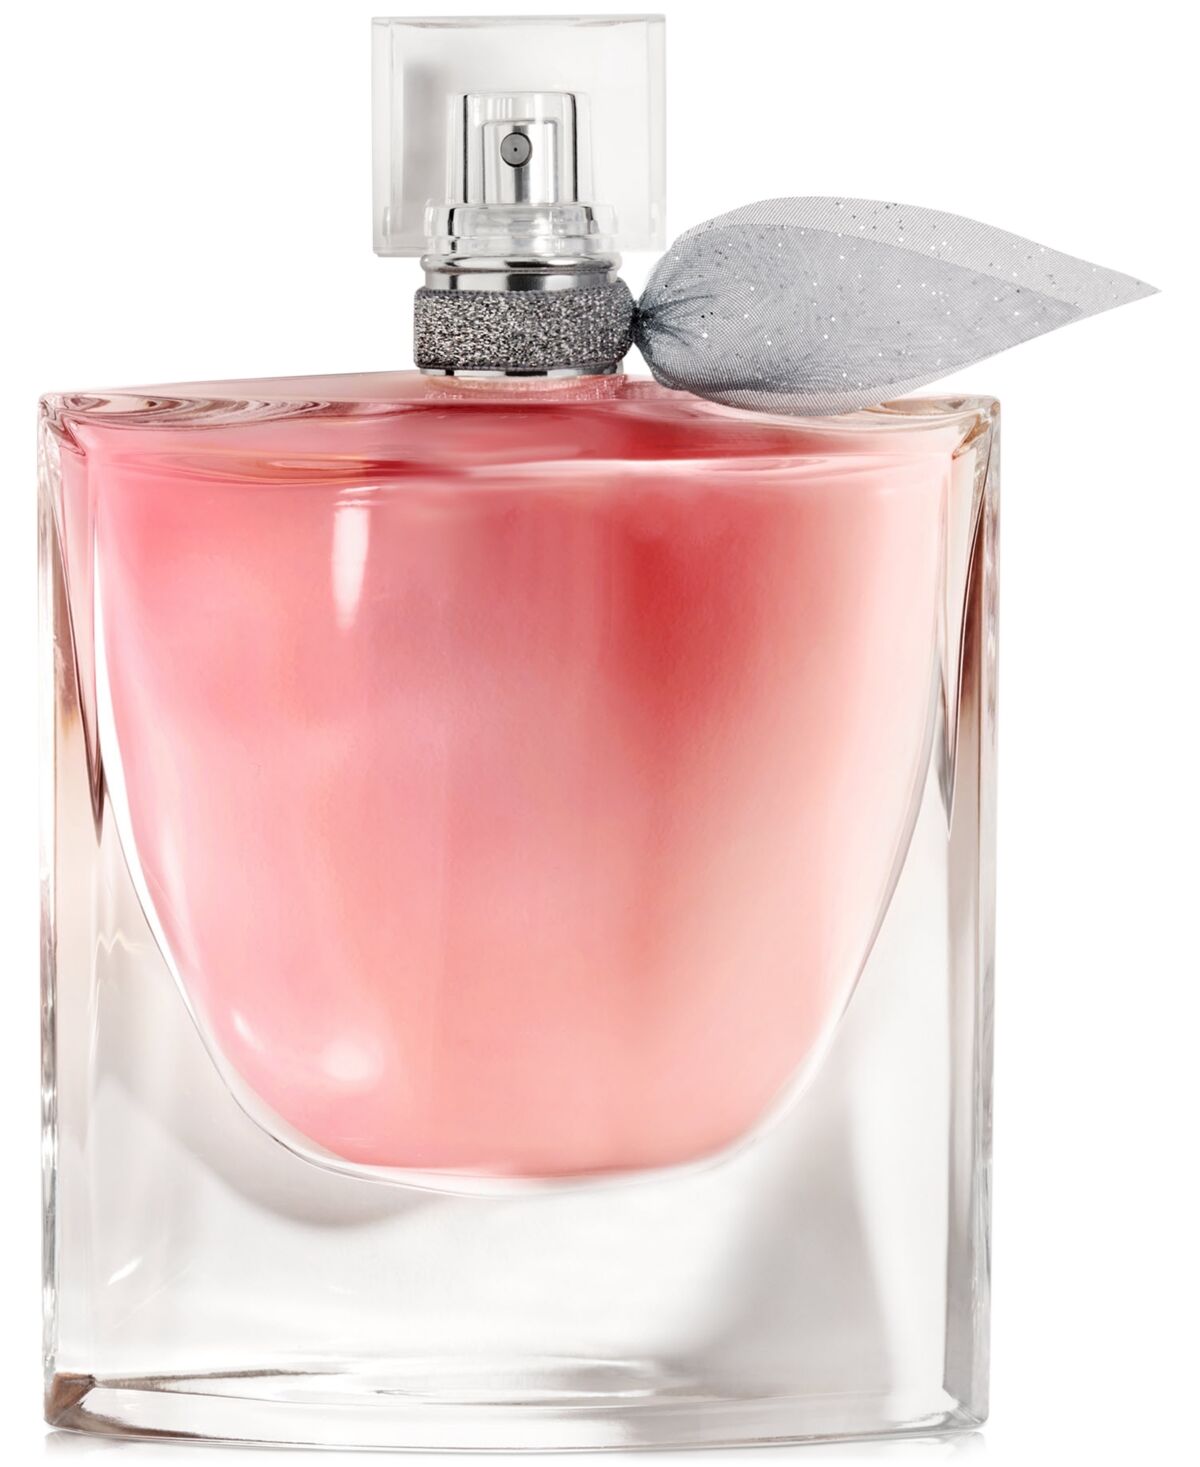 Lancome La vie est belle Eau de Parfum Women's Fragrance Refillable, 3.4 oz.